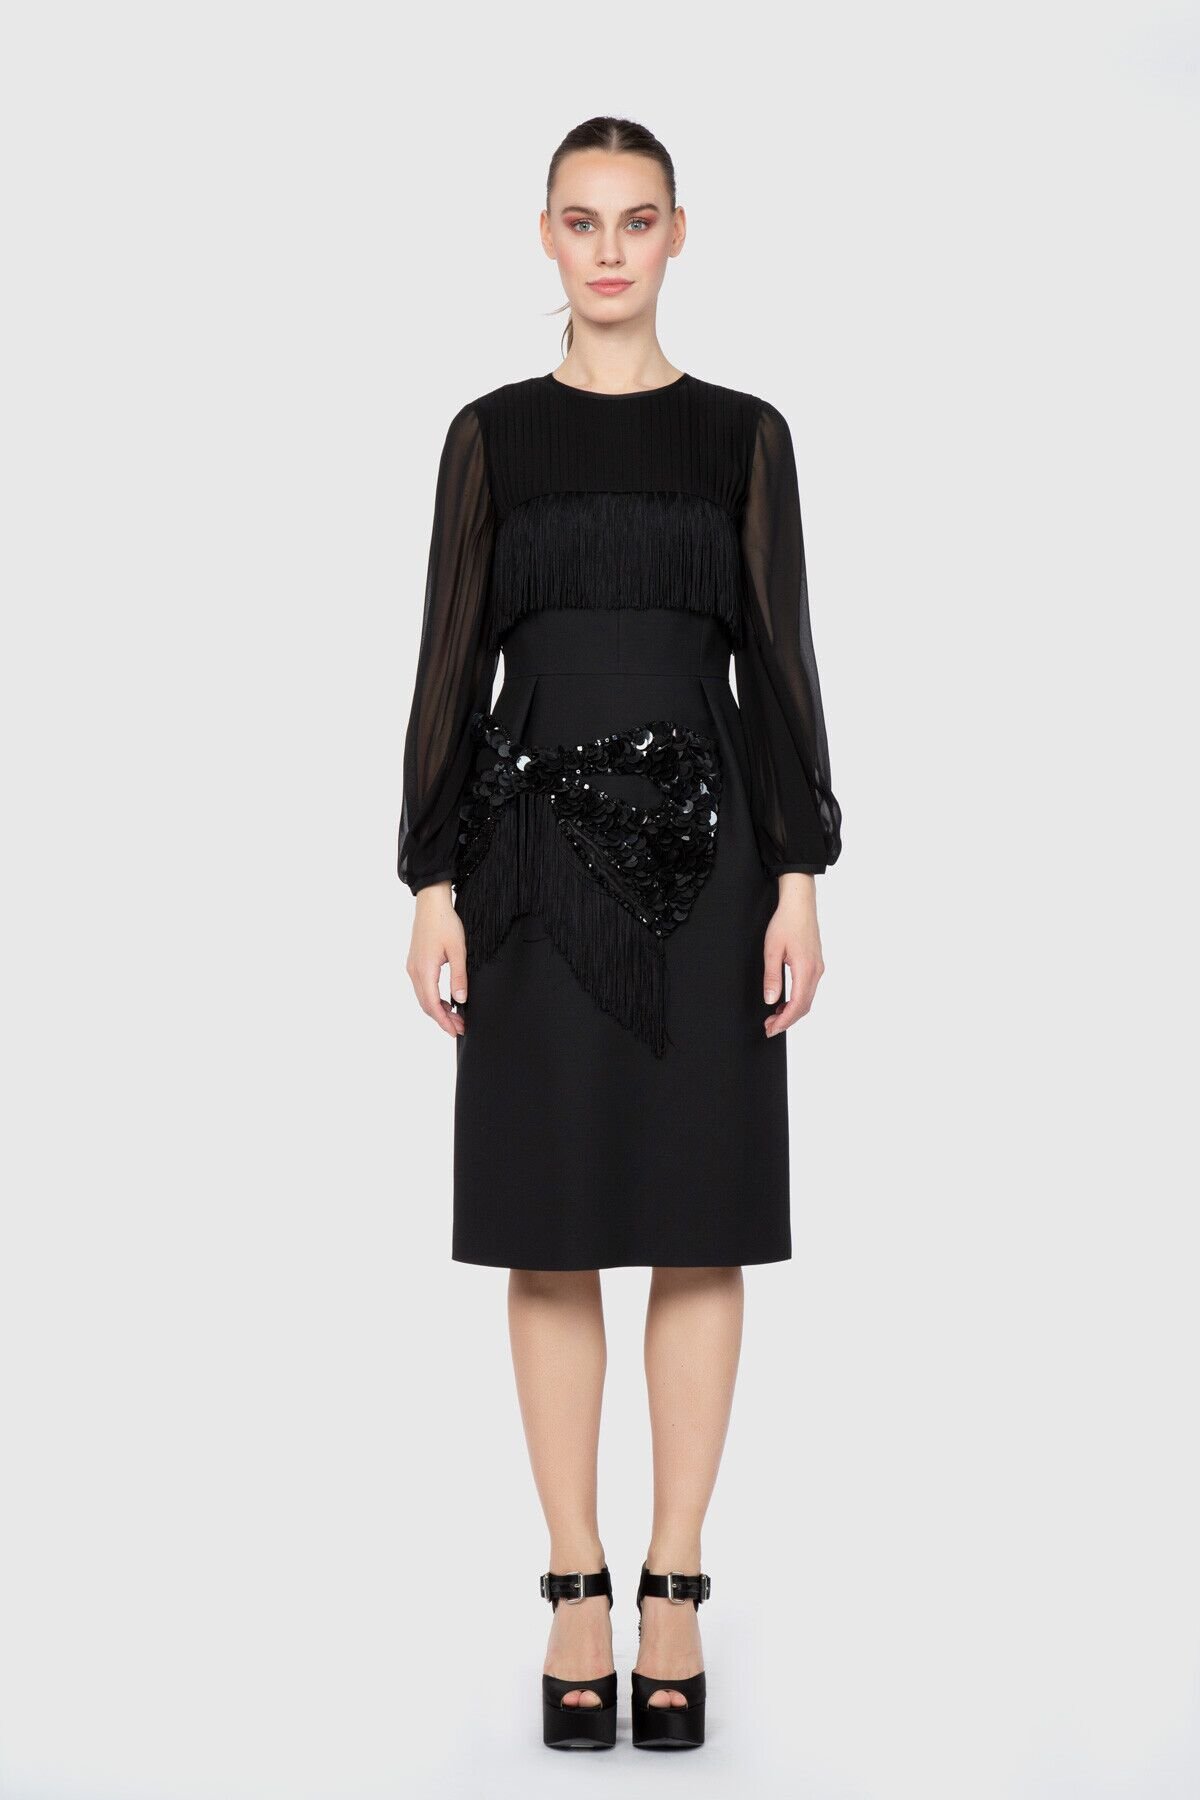 Dice Kayek Fiyonk Detaylı İşlemeli Diz Altı Siyah Tasarım Elbise